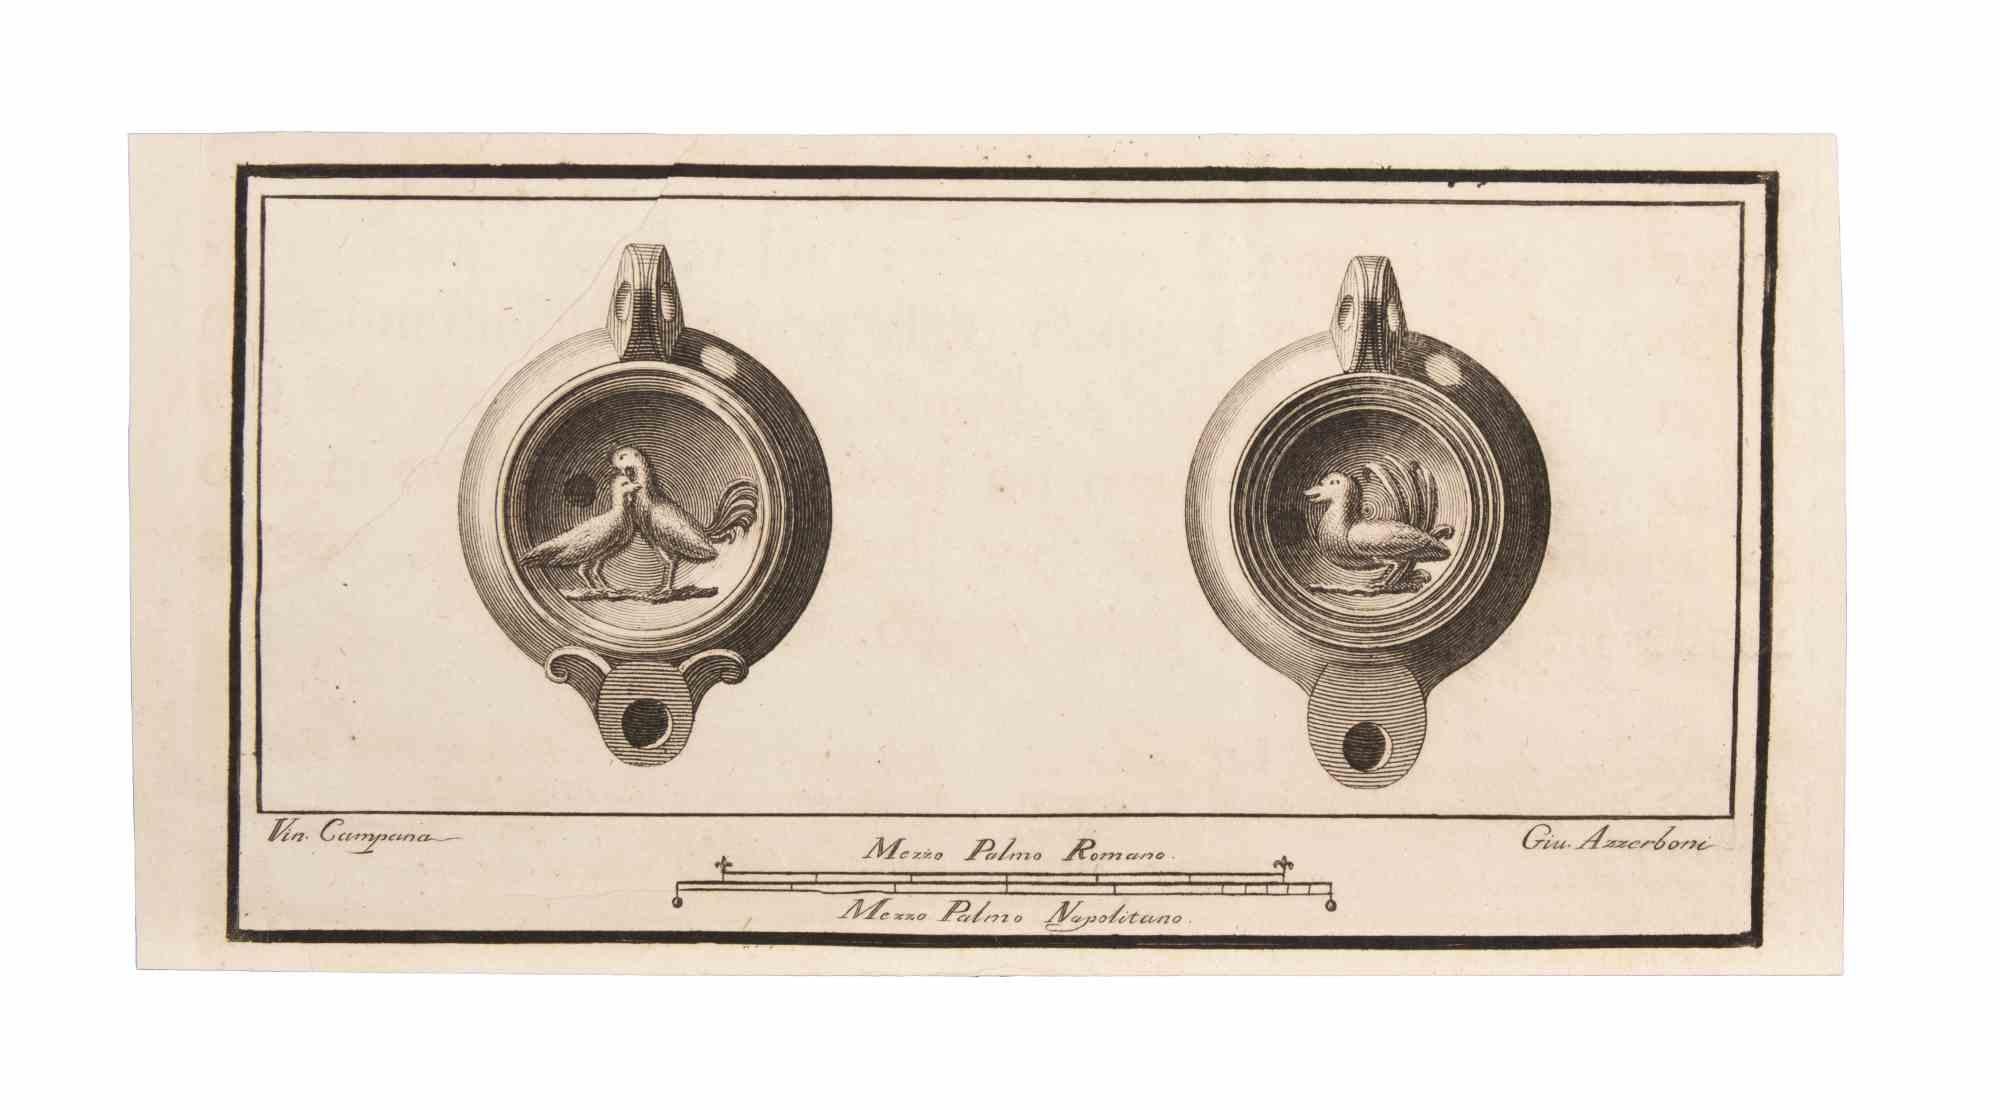 Öllampe mit Dekoration ist eine Radierung von Vincenzo Campana (1730-1806).

Die Radierung gehört zu der Druckserie "Antiquities of Herculaneum Exposed" (Originaltitel: "Le Antichità di Ercolano Esposte"), einem achtbändigen Band mit Stichen von